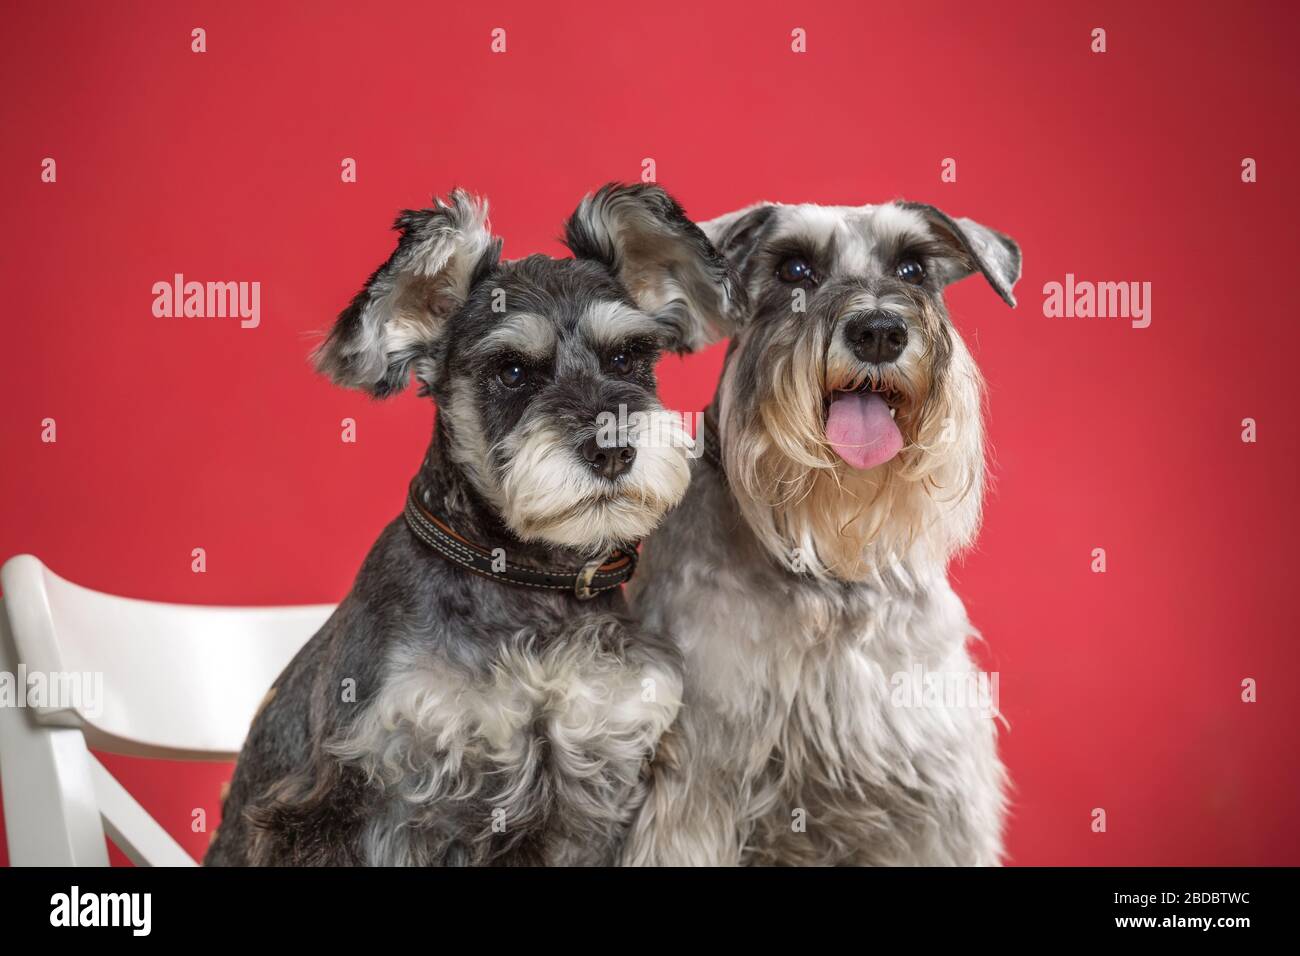 Portrait de deux chiens schnauzer miniatures dans un studio avec un fond rouge Banque D'Images